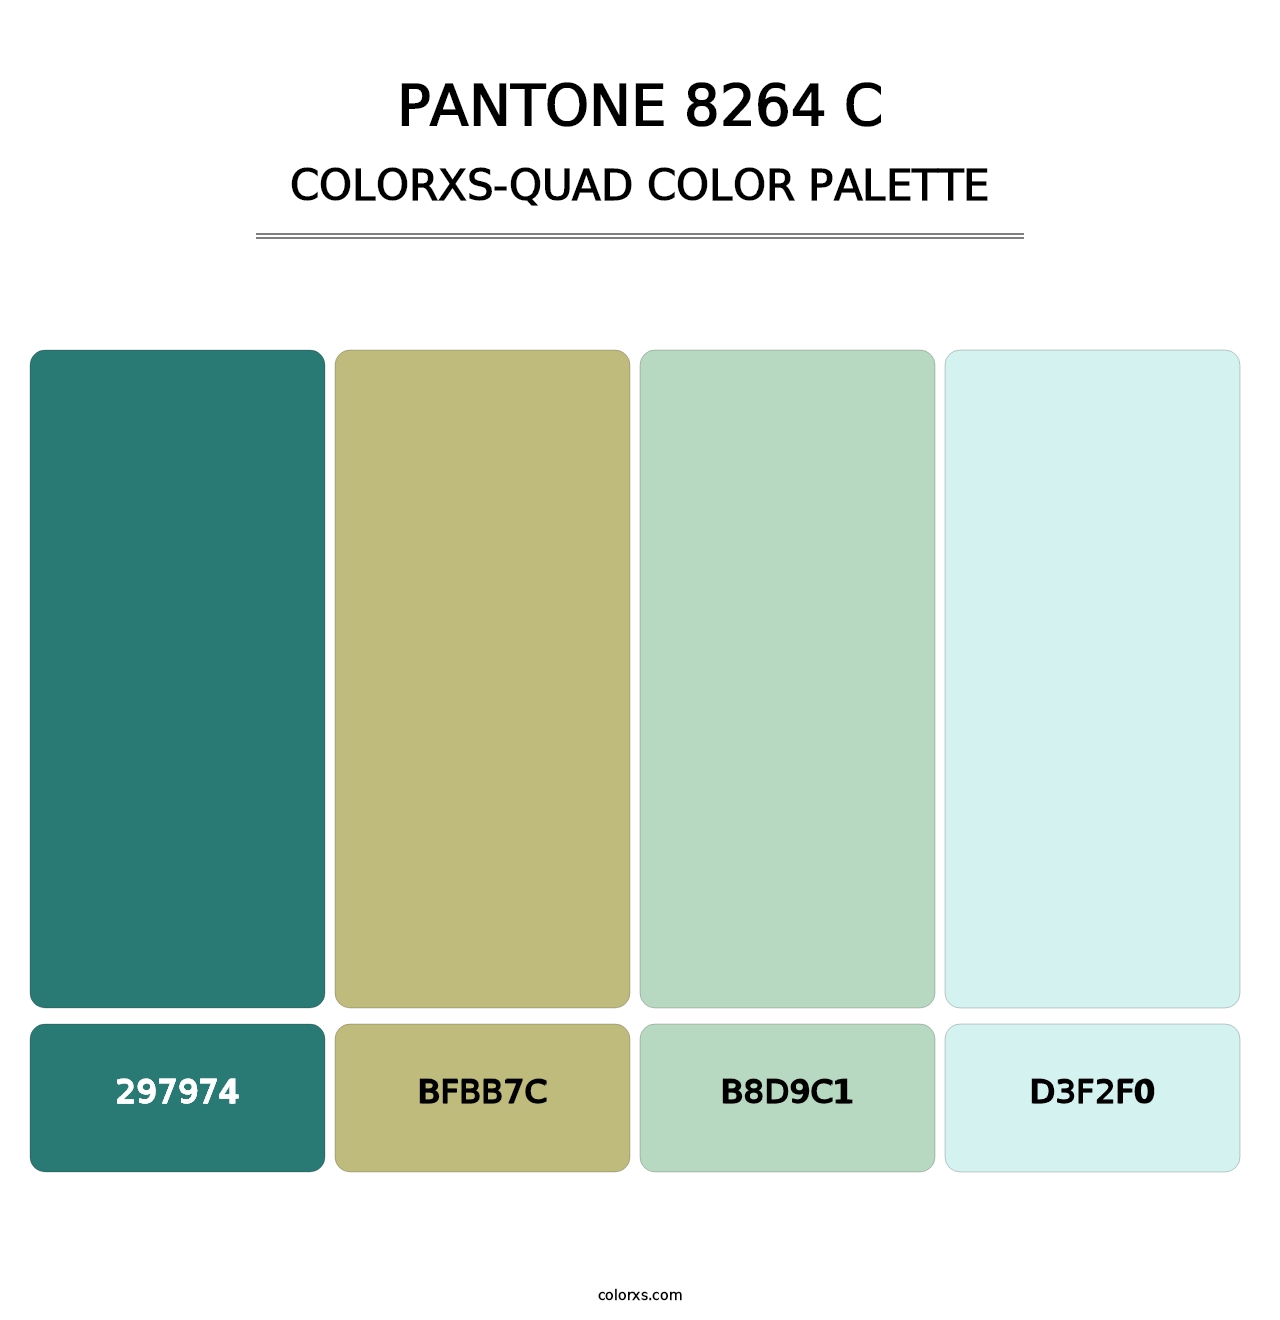 PANTONE 8264 C - Colorxs Quad Palette